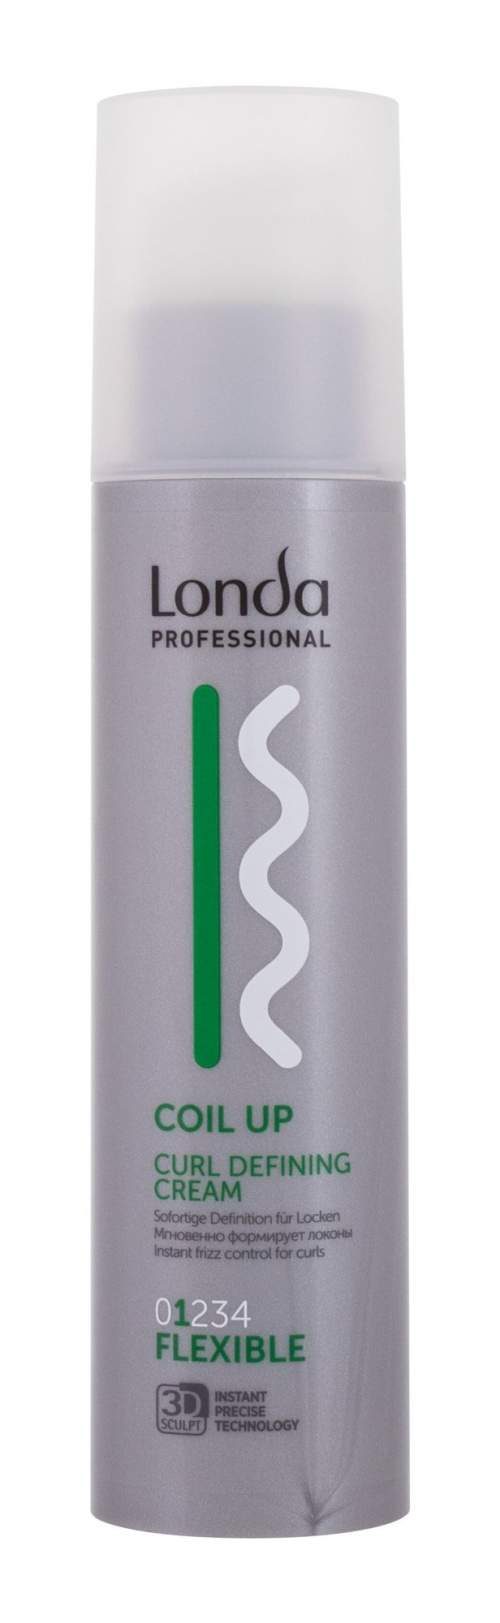 Londa Professional Coil Up Curl Defining Cream 200 ml gelový krém pro definici kudrnatých vlasů pro ženy